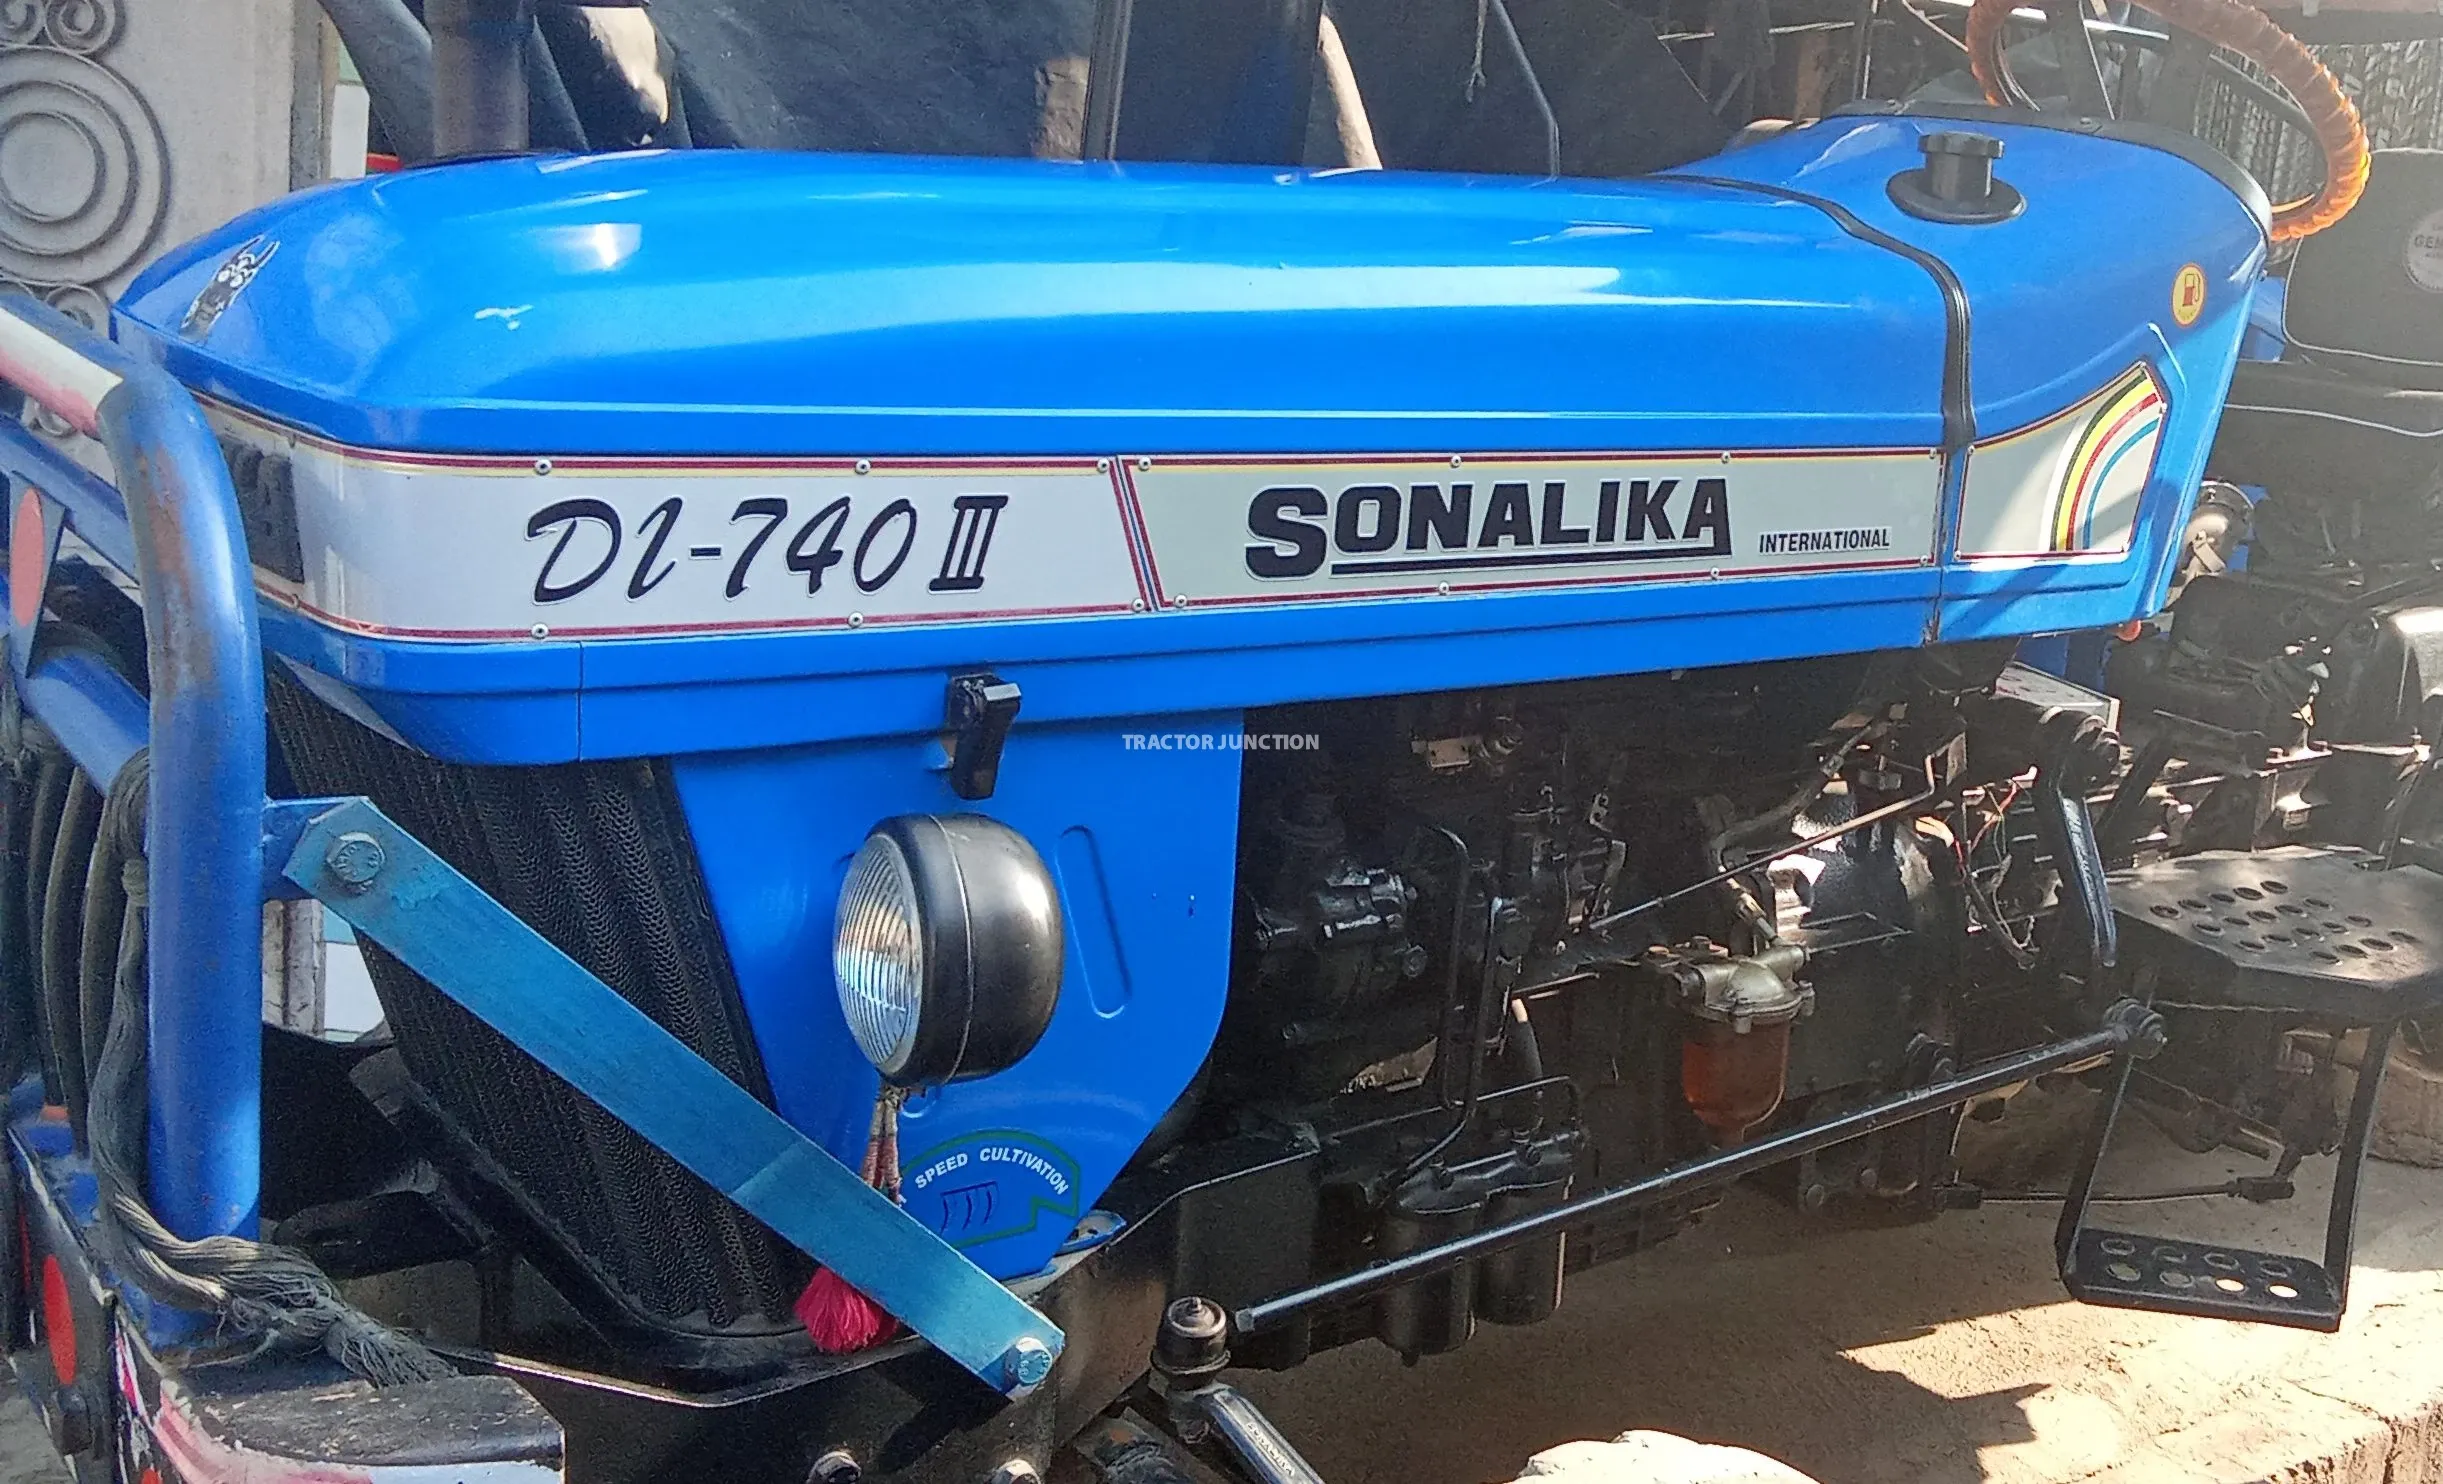 சோனாலிகா DI 740 III S3